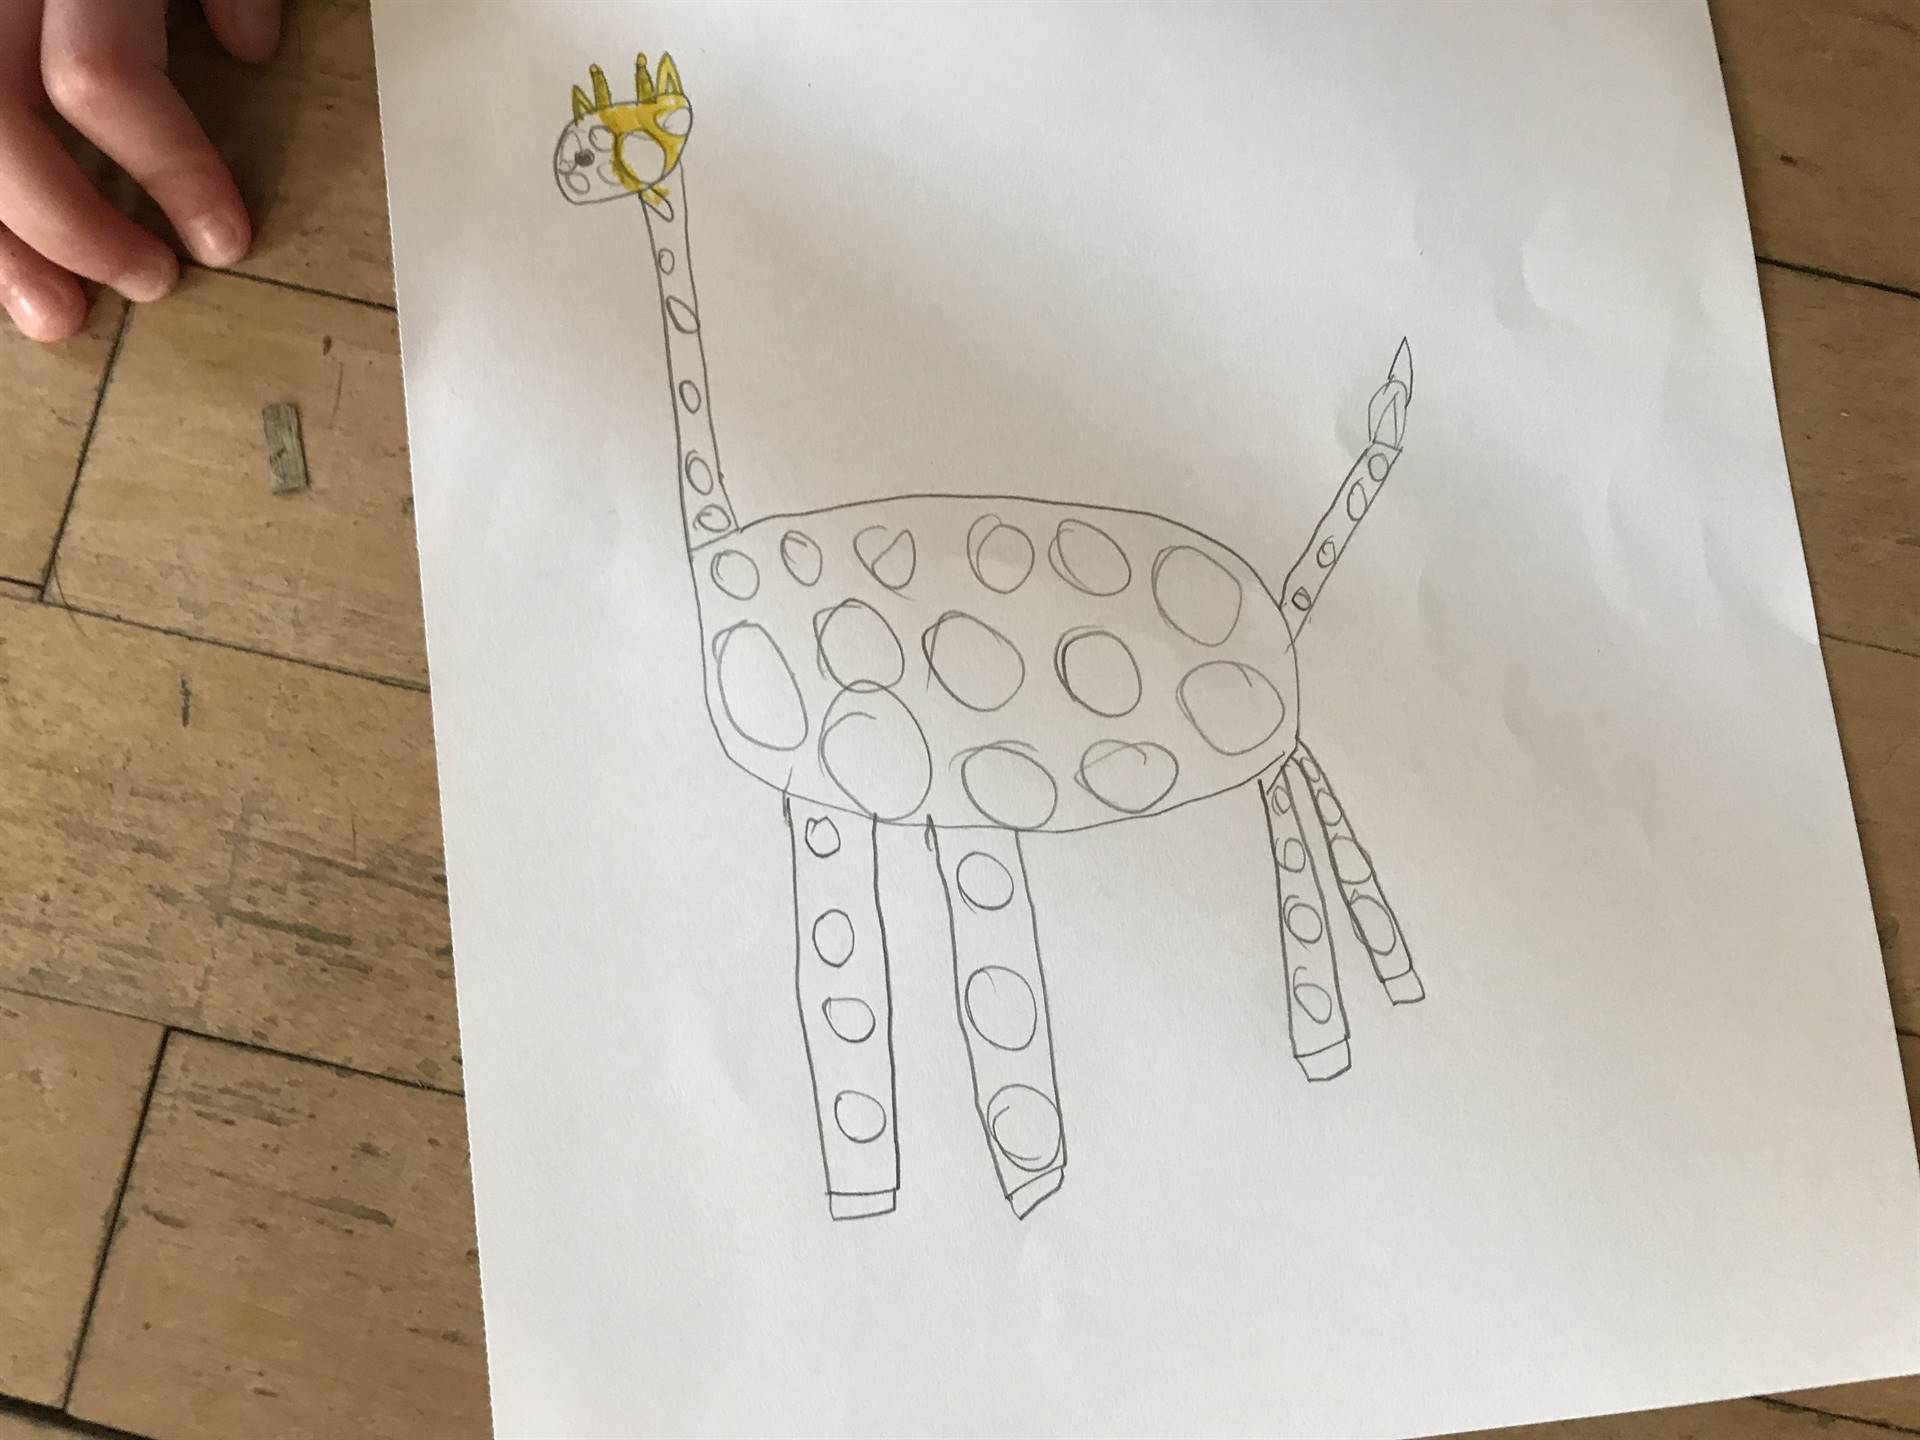 A drawing of a giraffe.